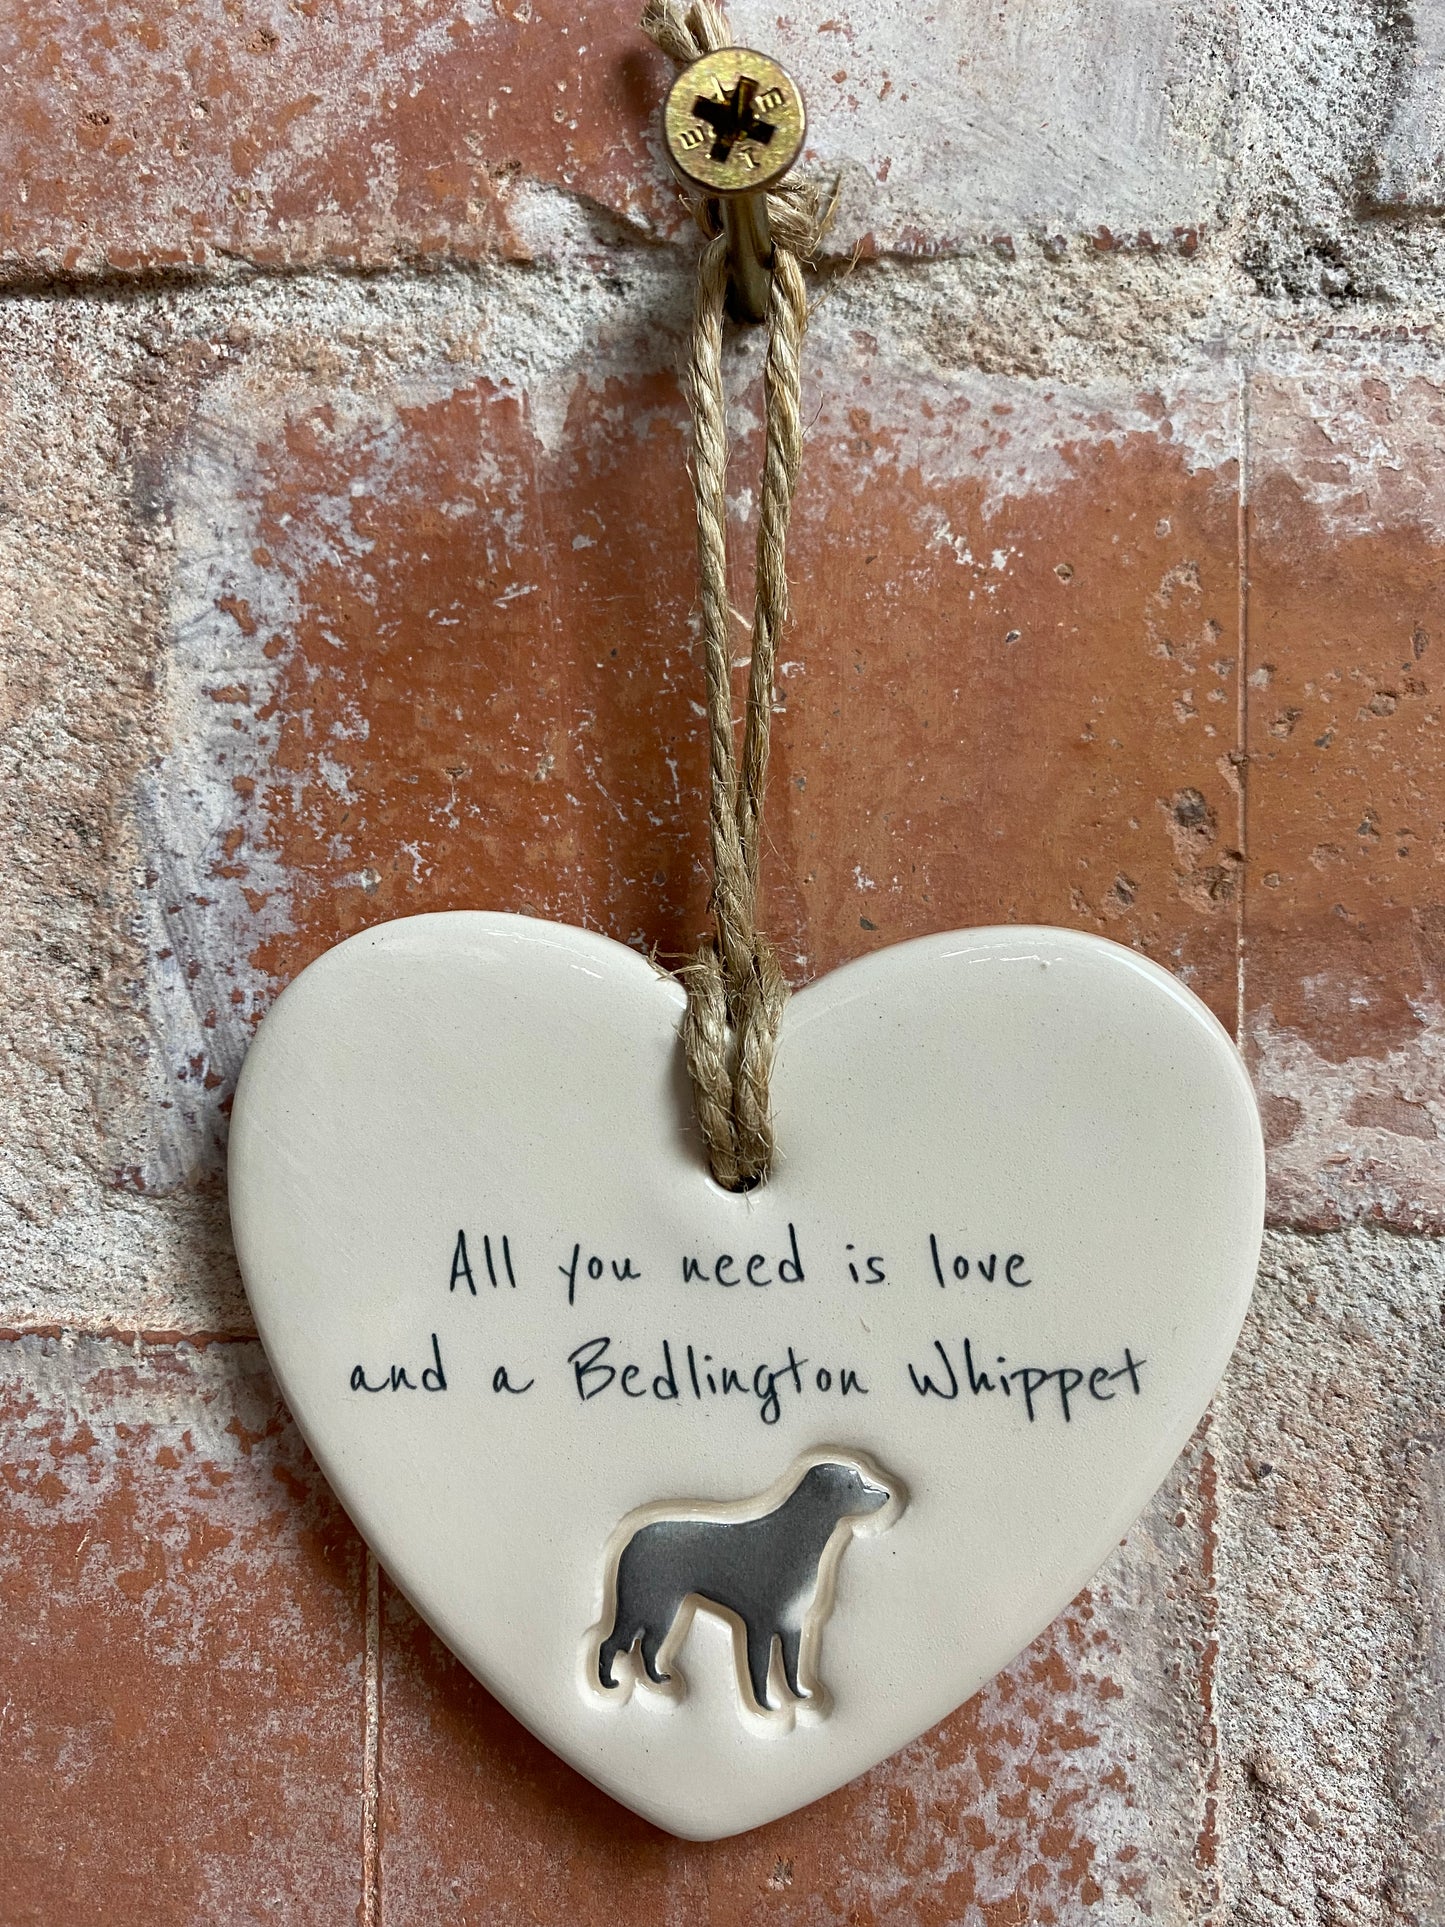 Bedlington Whippet ceramic heart